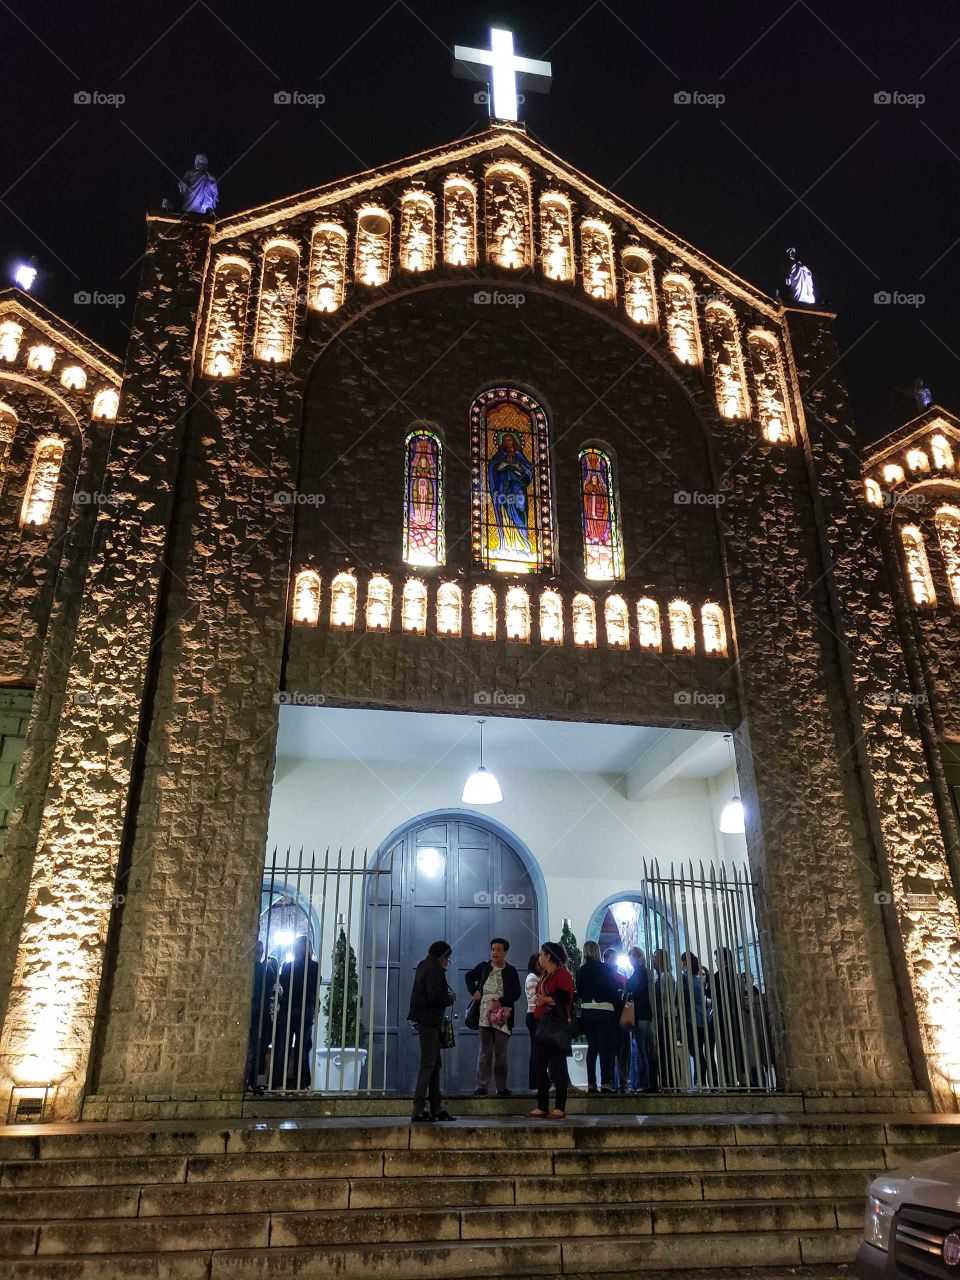 Igreja Matriz da cidade Mauá, no estado de Sao Paulo, Brasil, toda iluminada a noite na saída de uma missa.